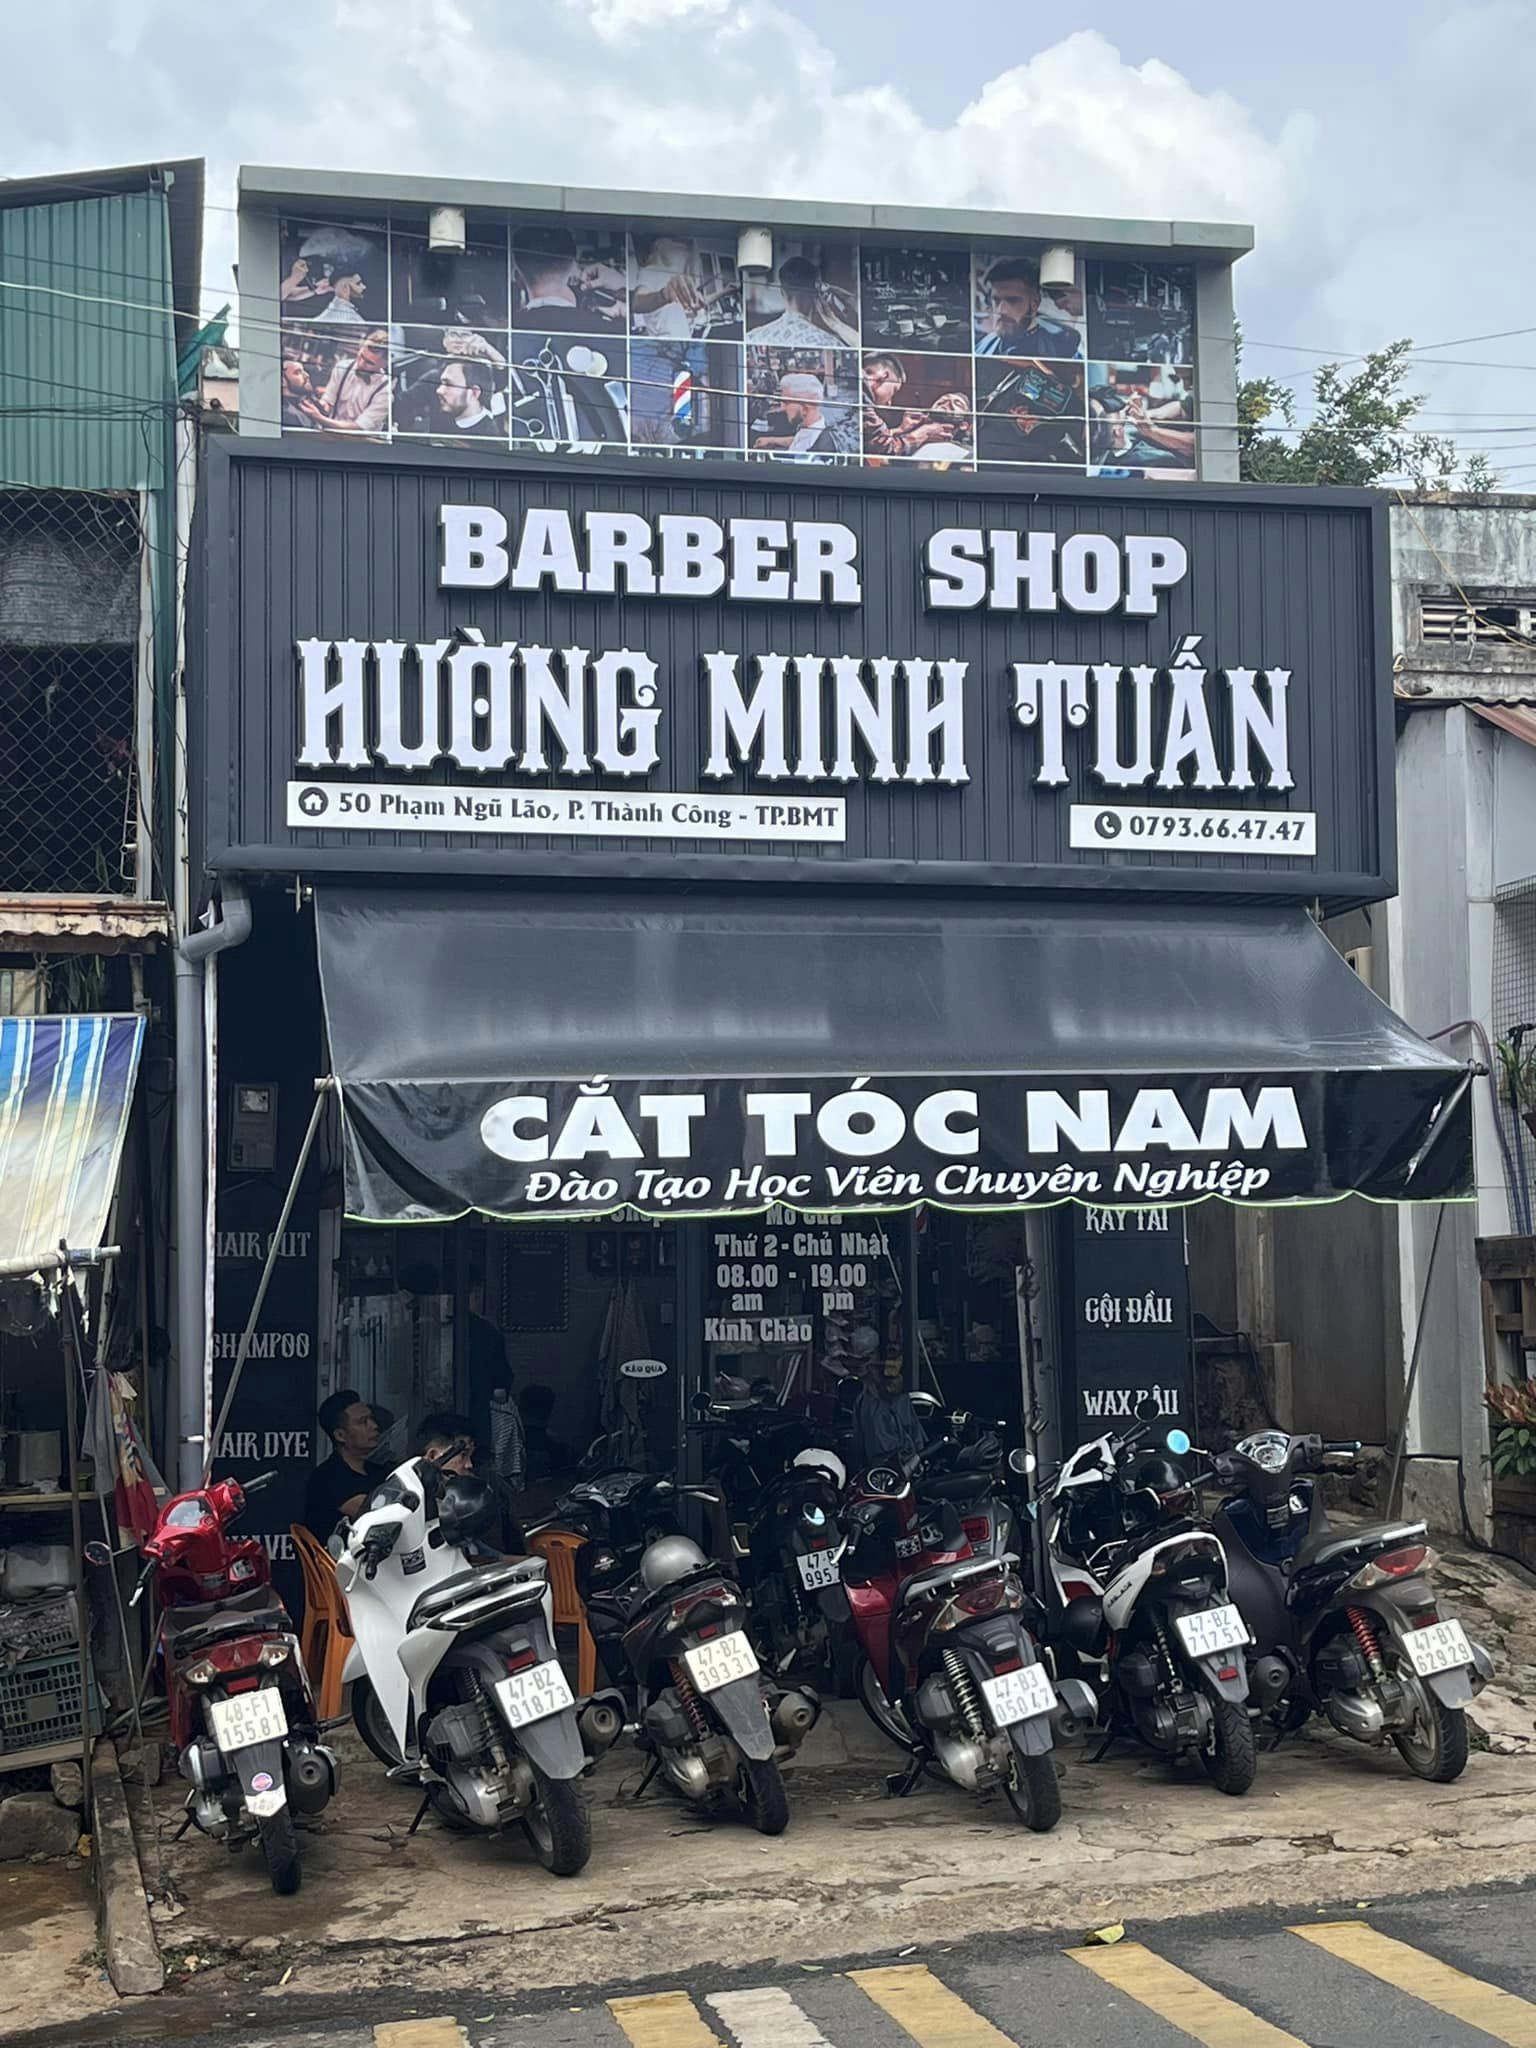 Hường Minh Tuấn Barber Shop ảnh 2